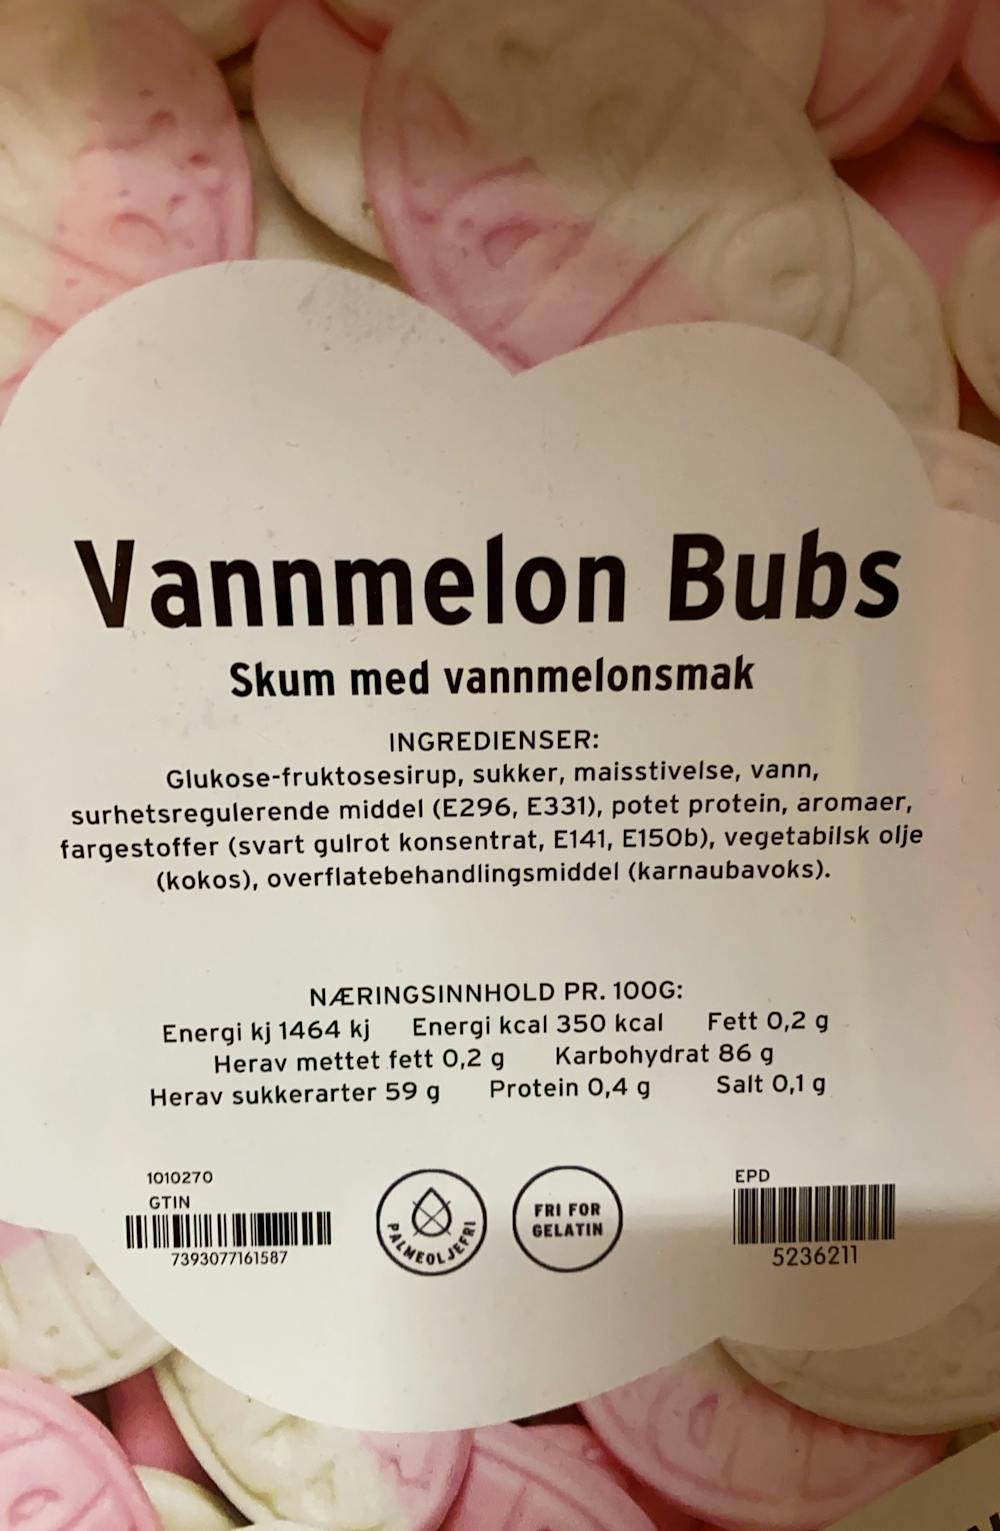 Ingredienslisten til  Vannmelon bubs